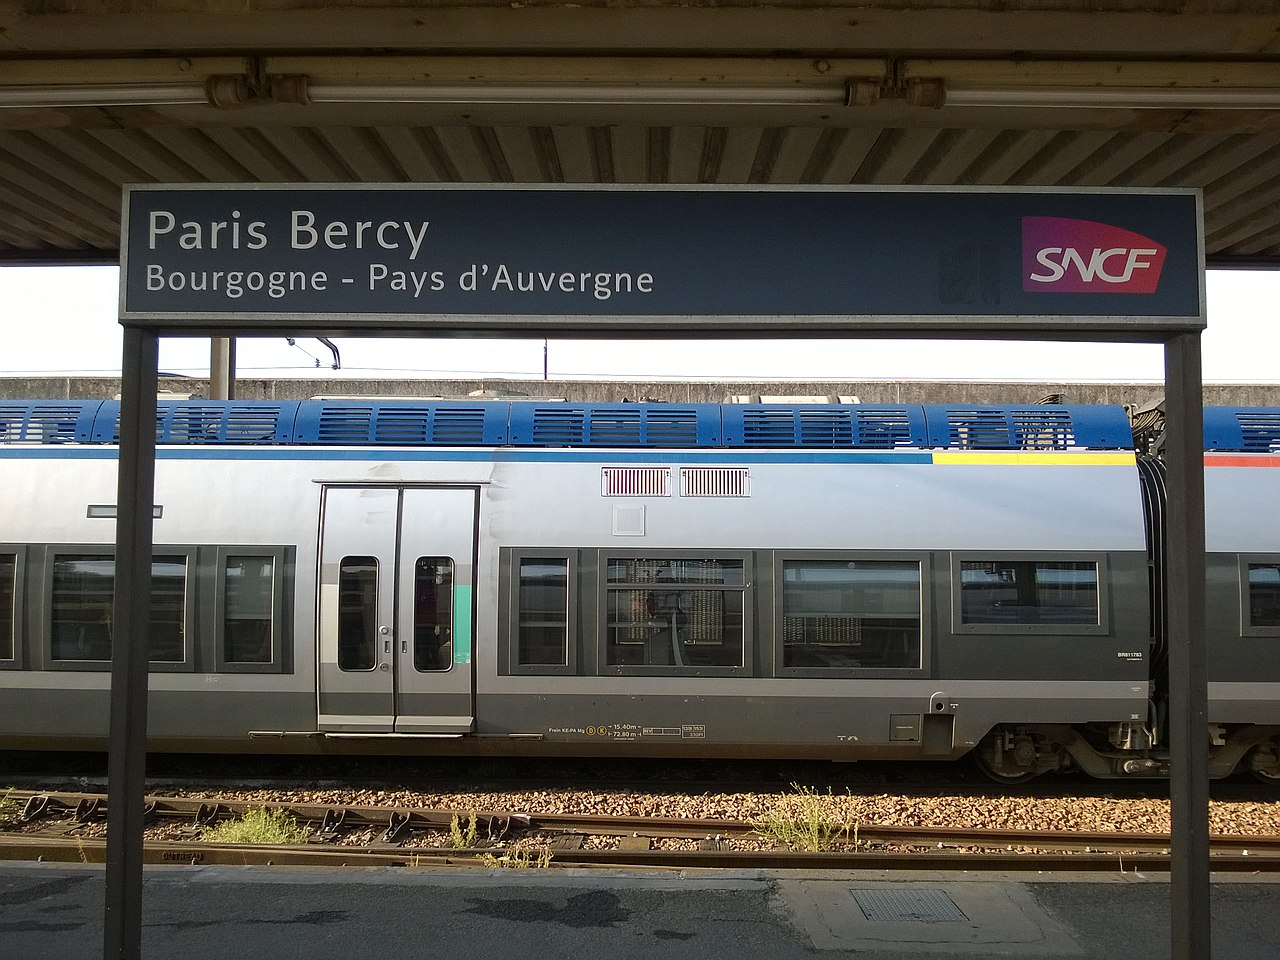 1280px-Panneau_de_nom_%E2%80%94_Gare_de_Paris-Bercy.jpg